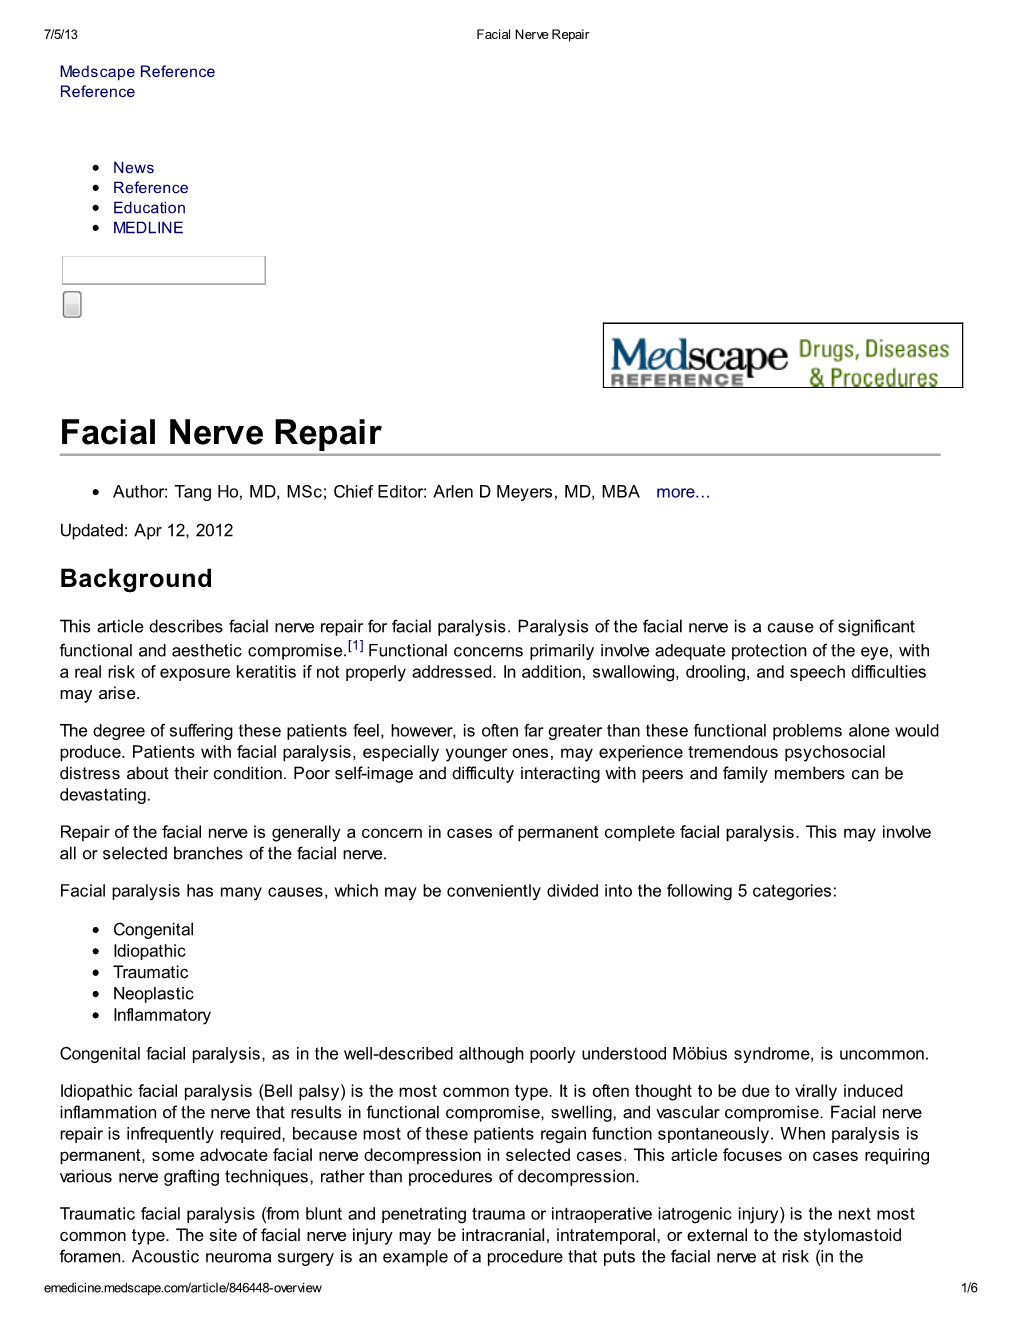 Facial Nerve Repair